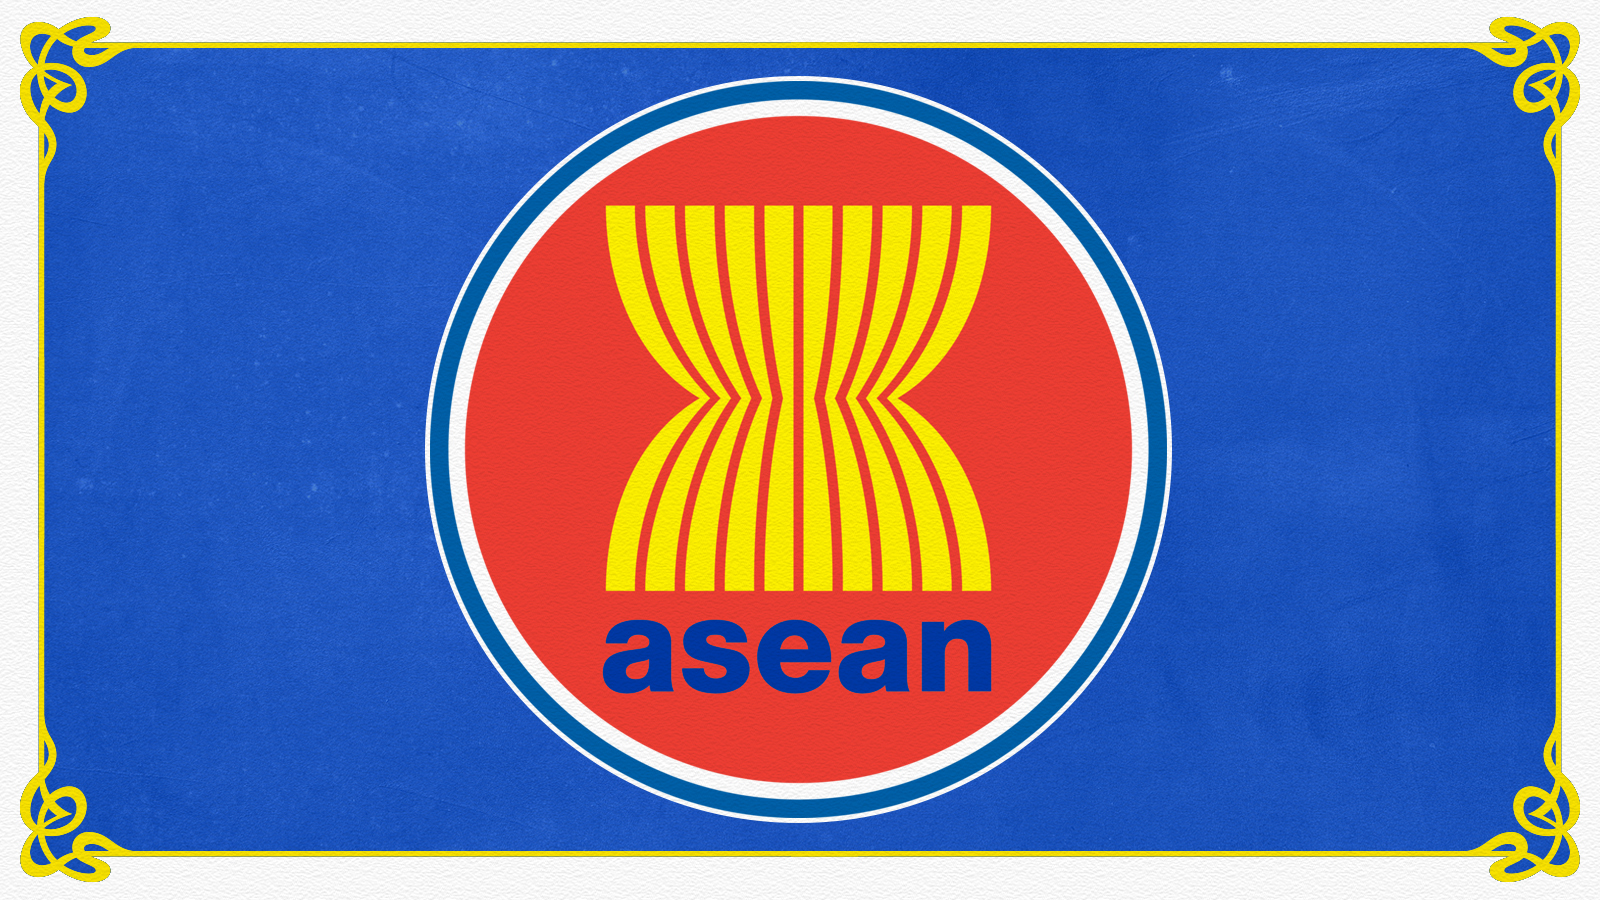 Asean didirikan atas gagasan negara-negara di asia tenggara yaitu